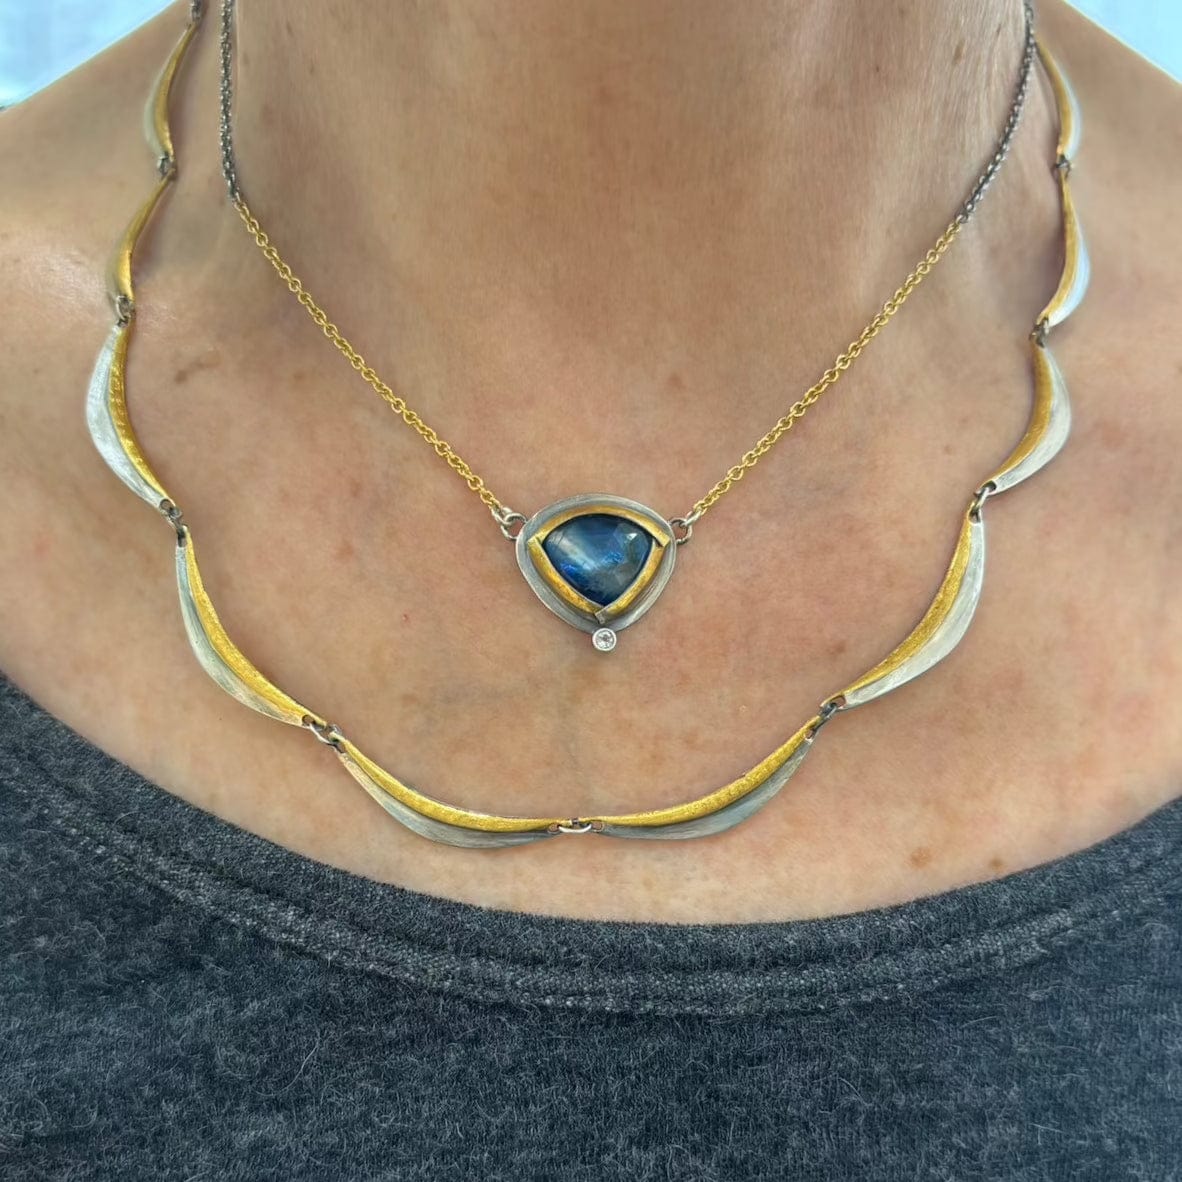 NKL Tri Fold Split Necklace with Blue Kyanite & White Topaz